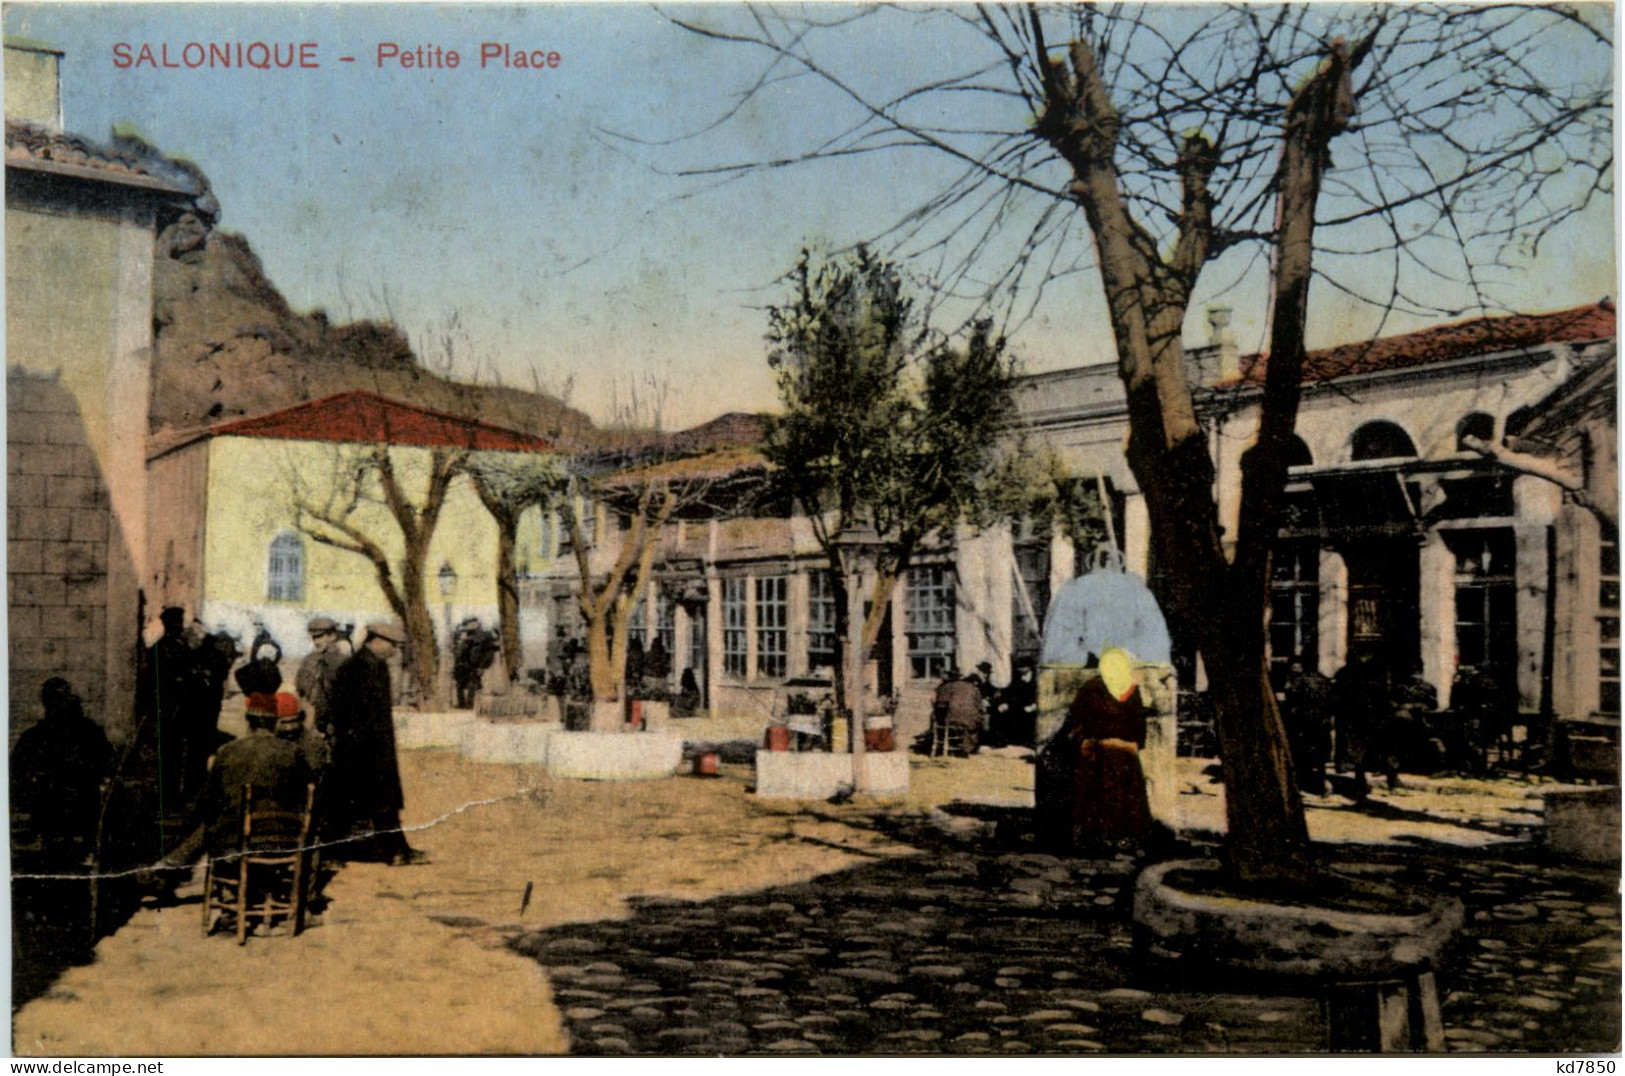 Salonique - Petite Place - Greece